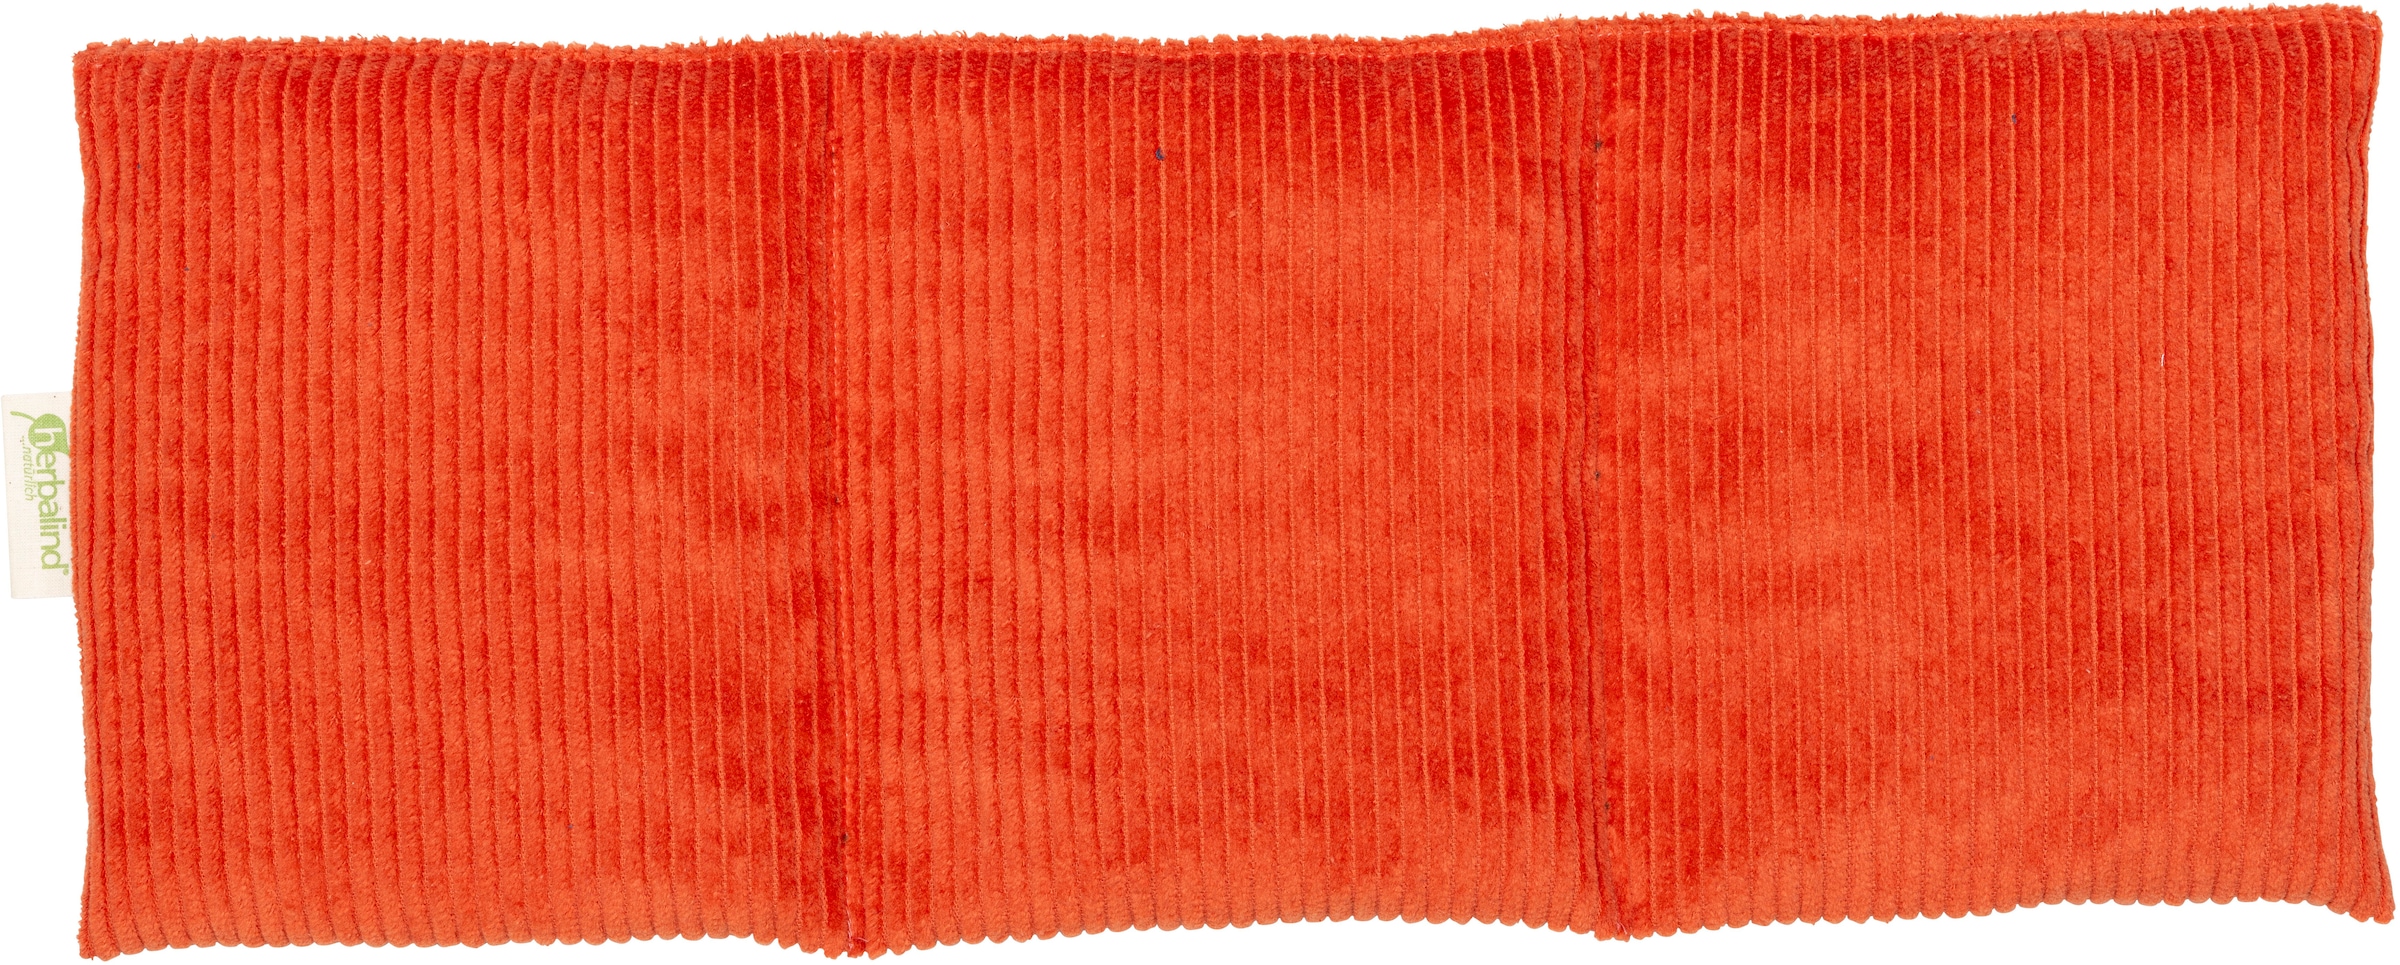 herbalind Kirschkernkissen "2094", Wärmekissen 50x20 cm, Cord Orange, auch als Kältekissen verwendbar